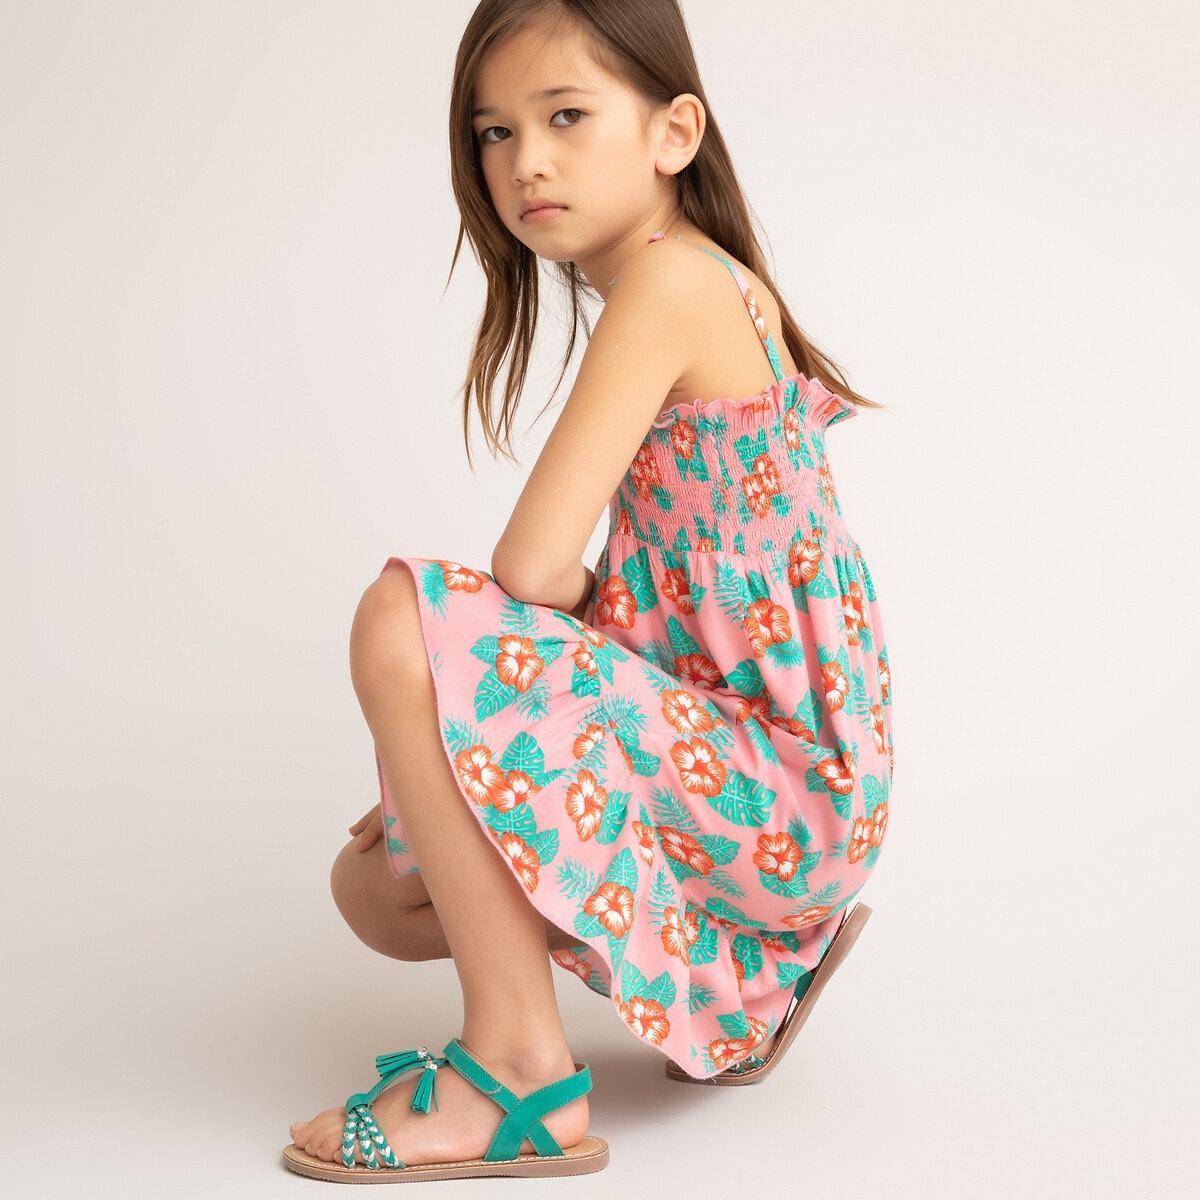 ΠΑΙΔΙ | Φορέματα | Αμάνικα Φόρεμα με τιράντες και χαβανέζικο μοτίβο, 3-12 ετών